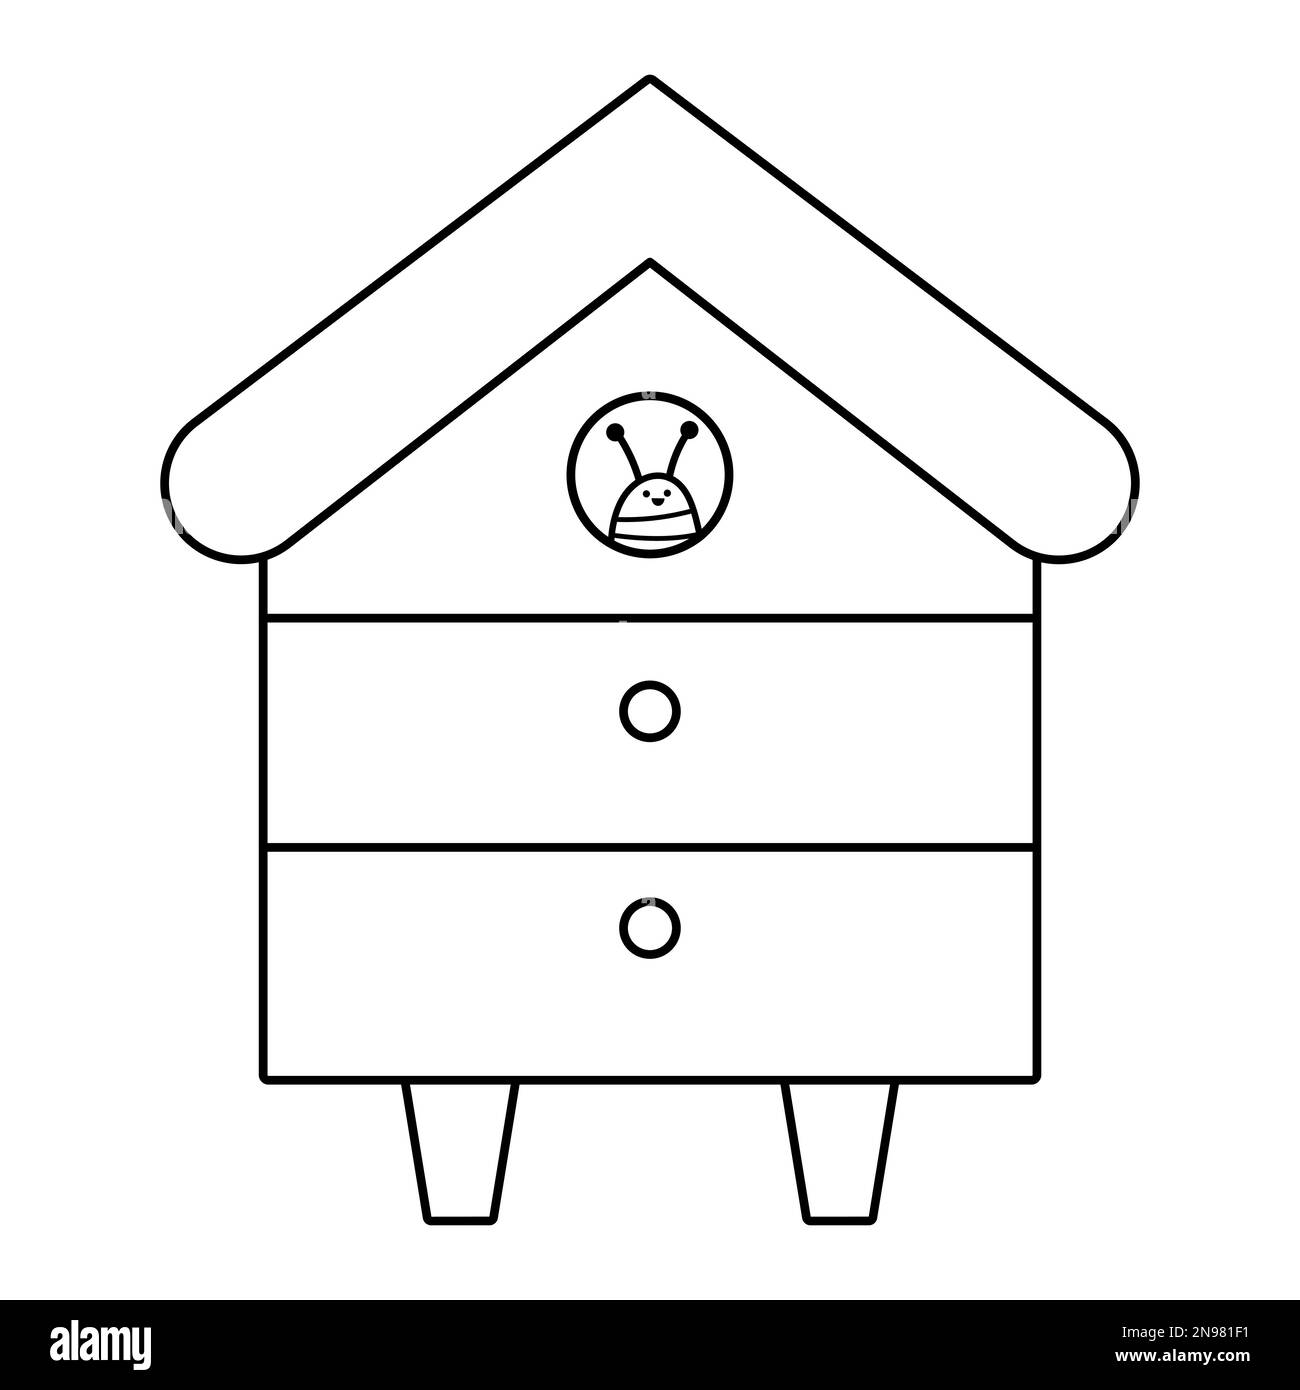 Vektor schwarz-weiße Bienenstrahllinie. Bienenhaus mit lächelnden Insekten isoliert auf weißem Hintergrund. Illustration der Imkerei oder Ausmalseite. Schatz Stock Vektor